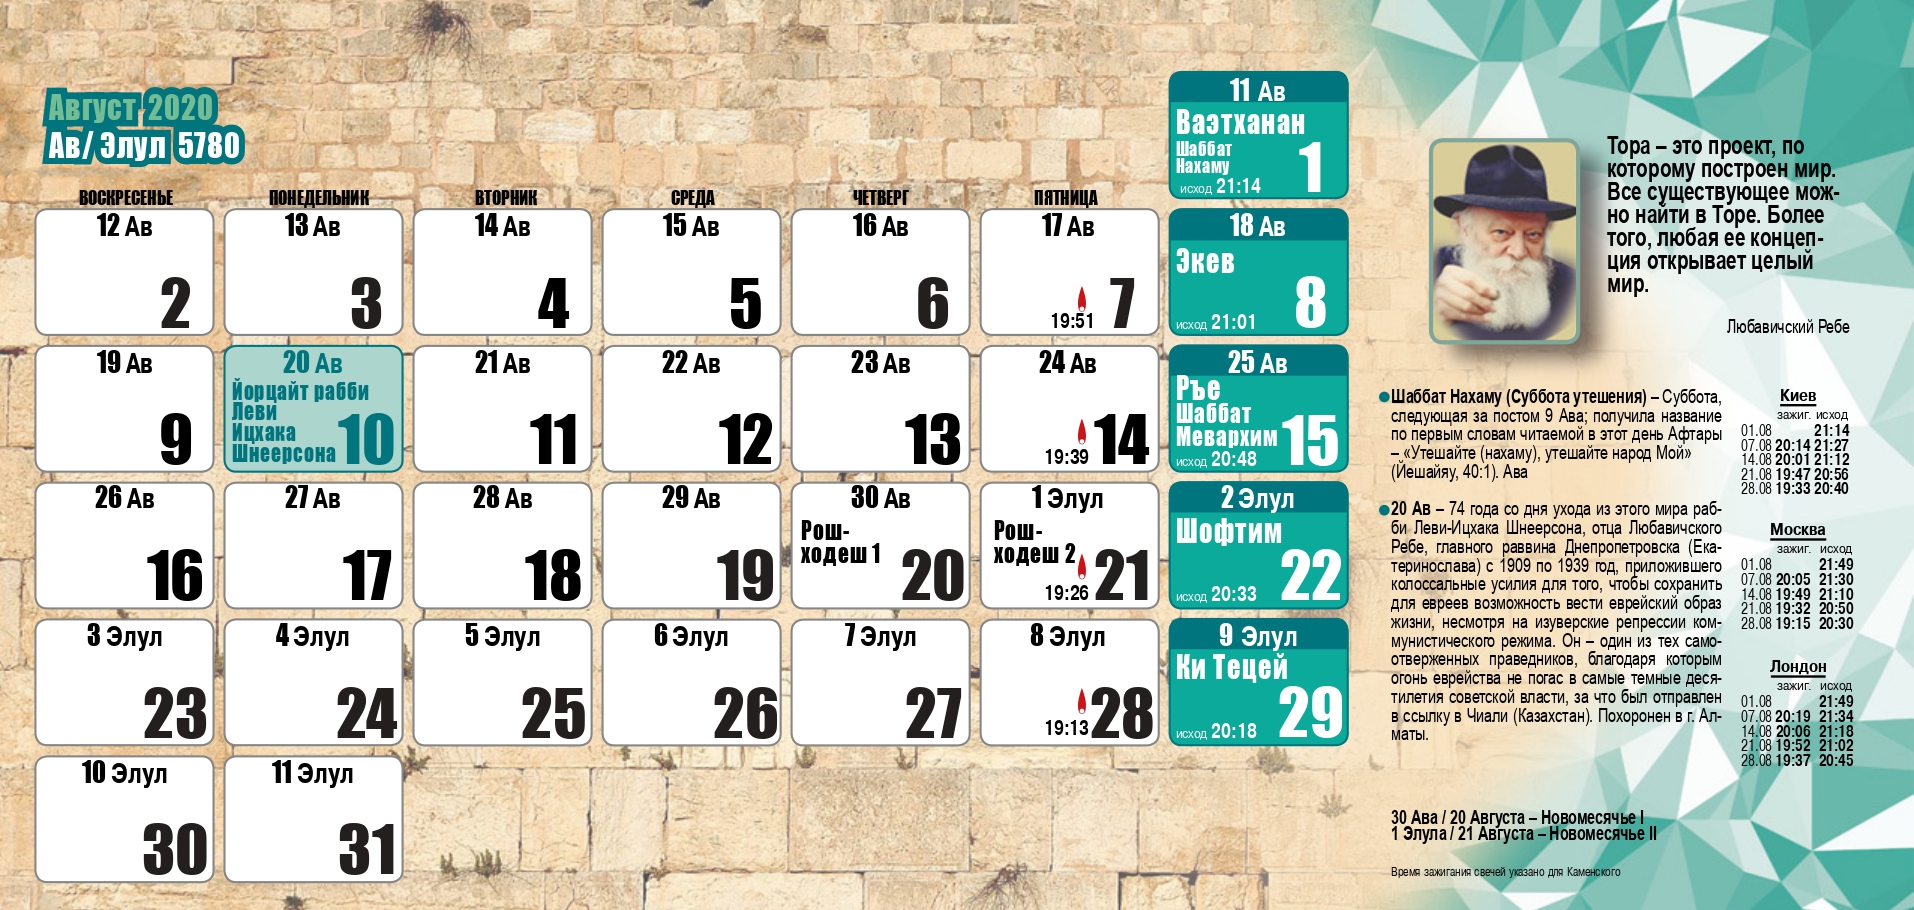 Иудейские праздники в марте. Календарь еврейских праздников. Еврейский календарь на 2021 год. Еврейский календарь на год. Еврейский календарь 2021 с праздничными датами.